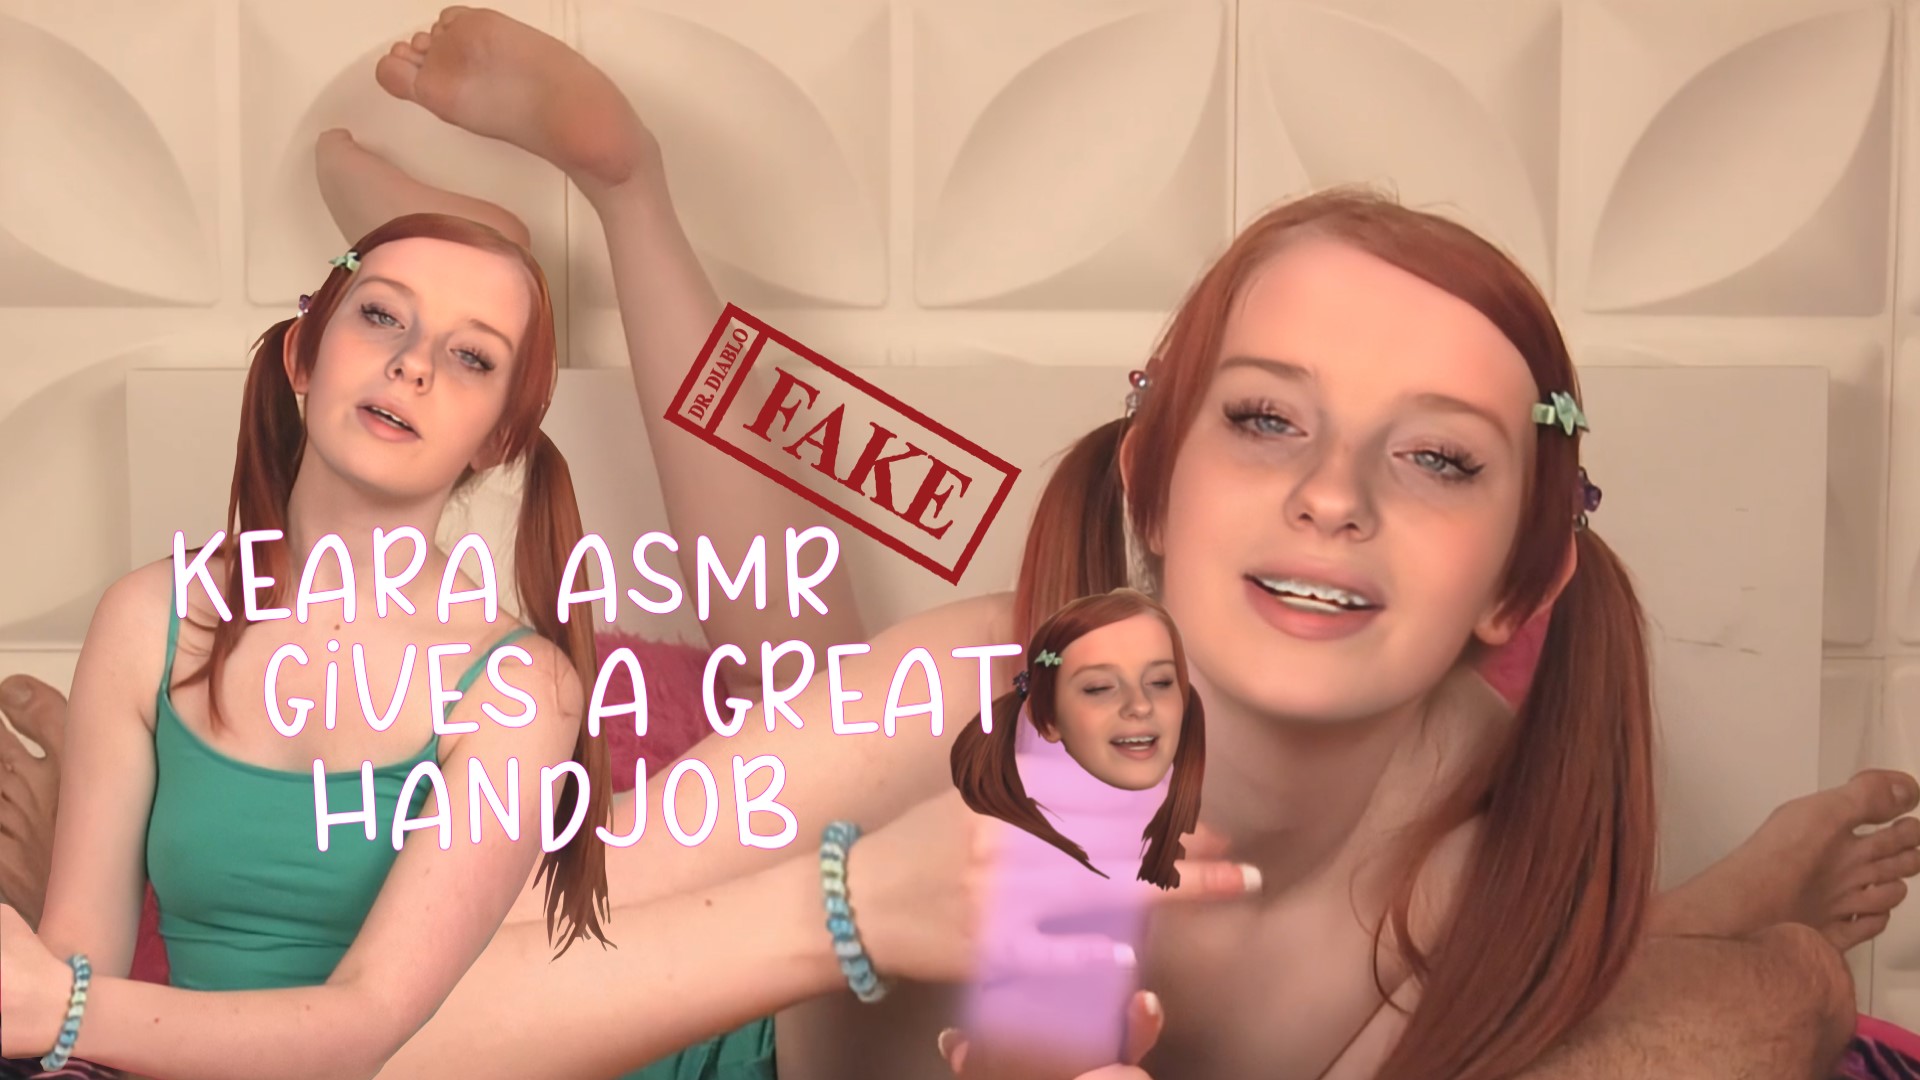 Fake Keara ASMR Gives a Great Handjob! [FREE FULL VIDEO]